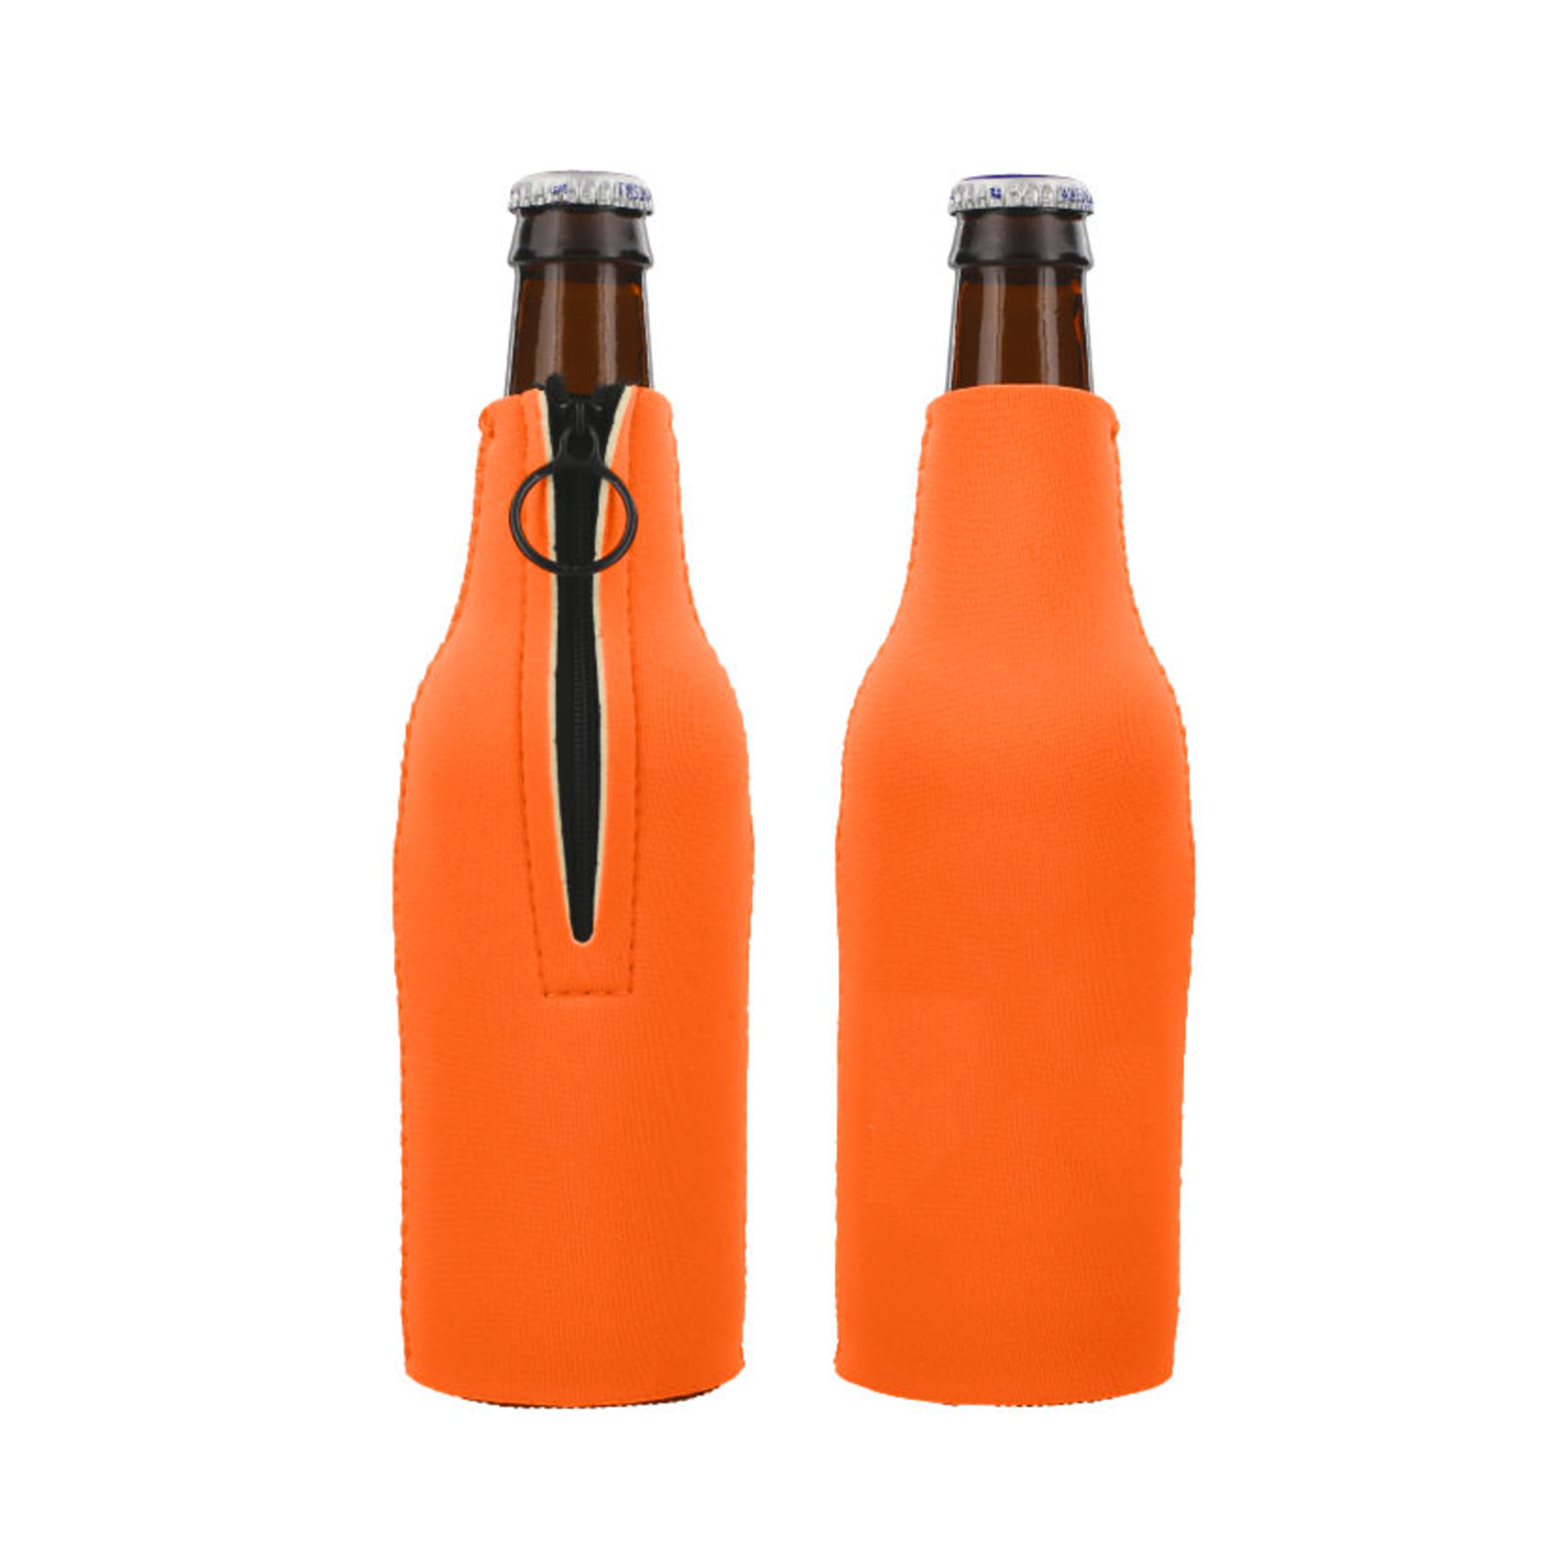 Giveaway Zipper Beer Bottle Insulators (12 Oz.)